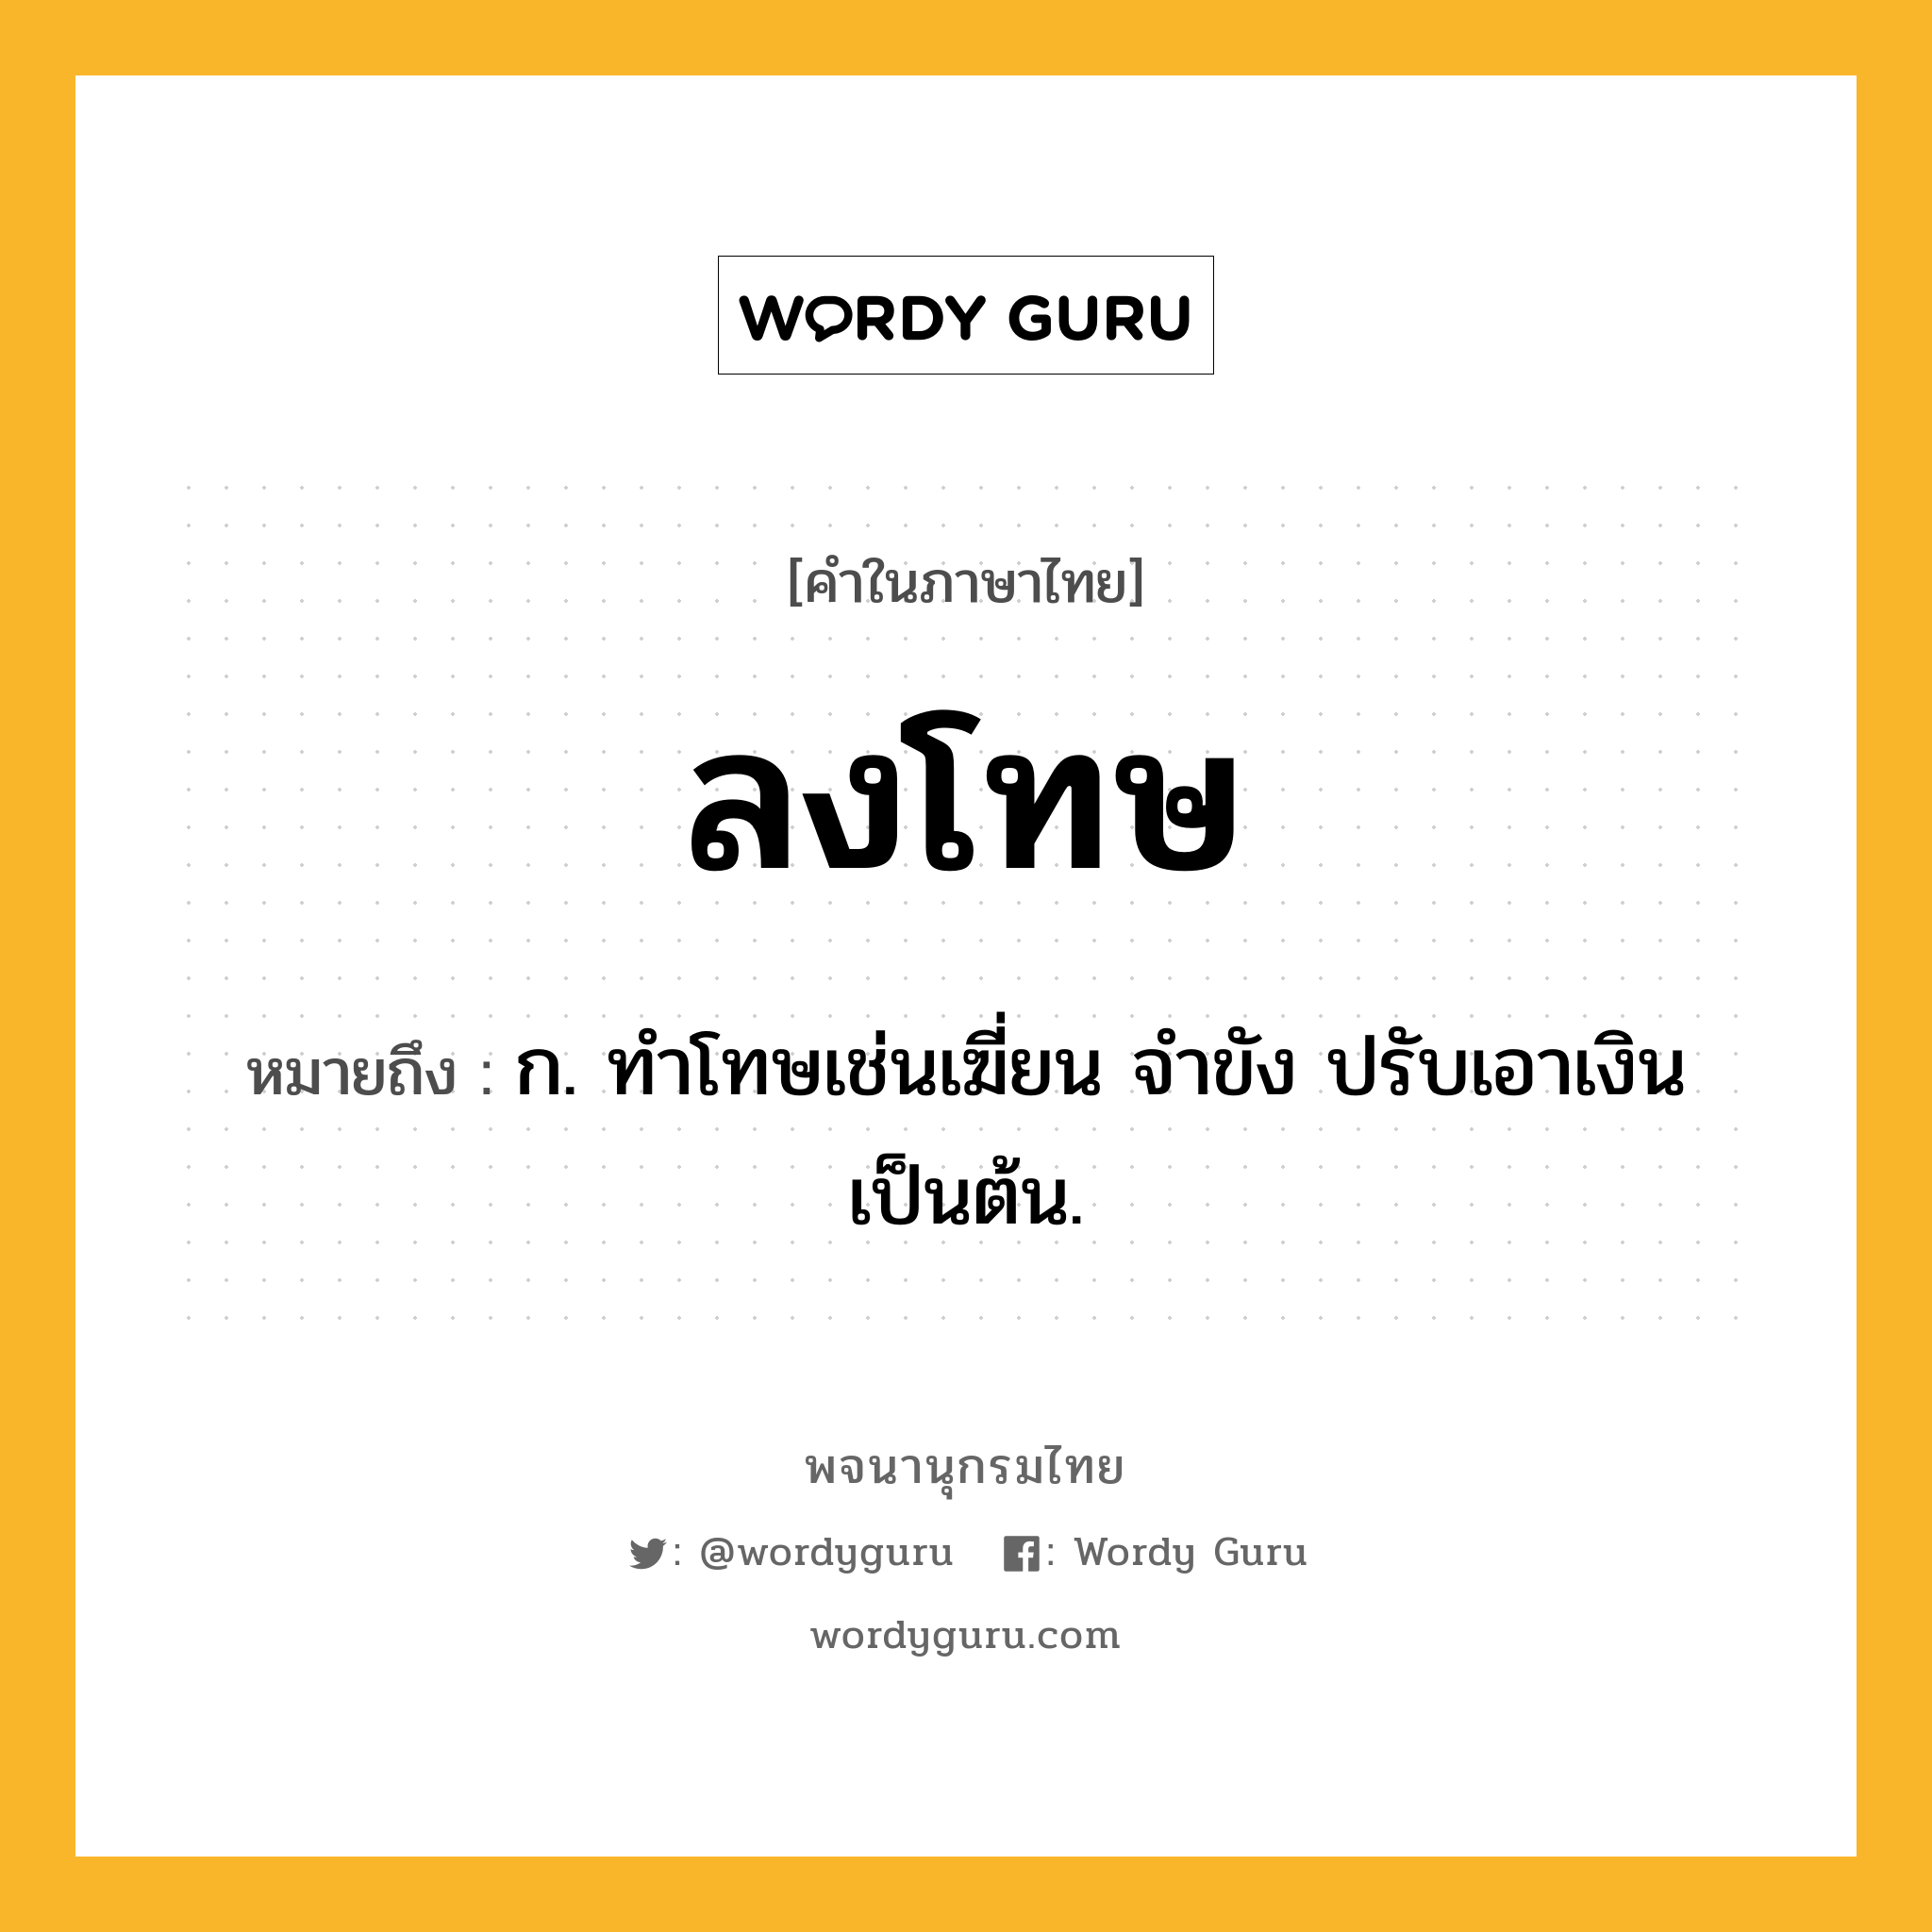 ลงโทษ ความหมาย หมายถึงอะไร?, คำในภาษาไทย ลงโทษ หมายถึง ก. ทําโทษเช่นเฆี่ยน จําขัง ปรับเอาเงิน เป็นต้น.